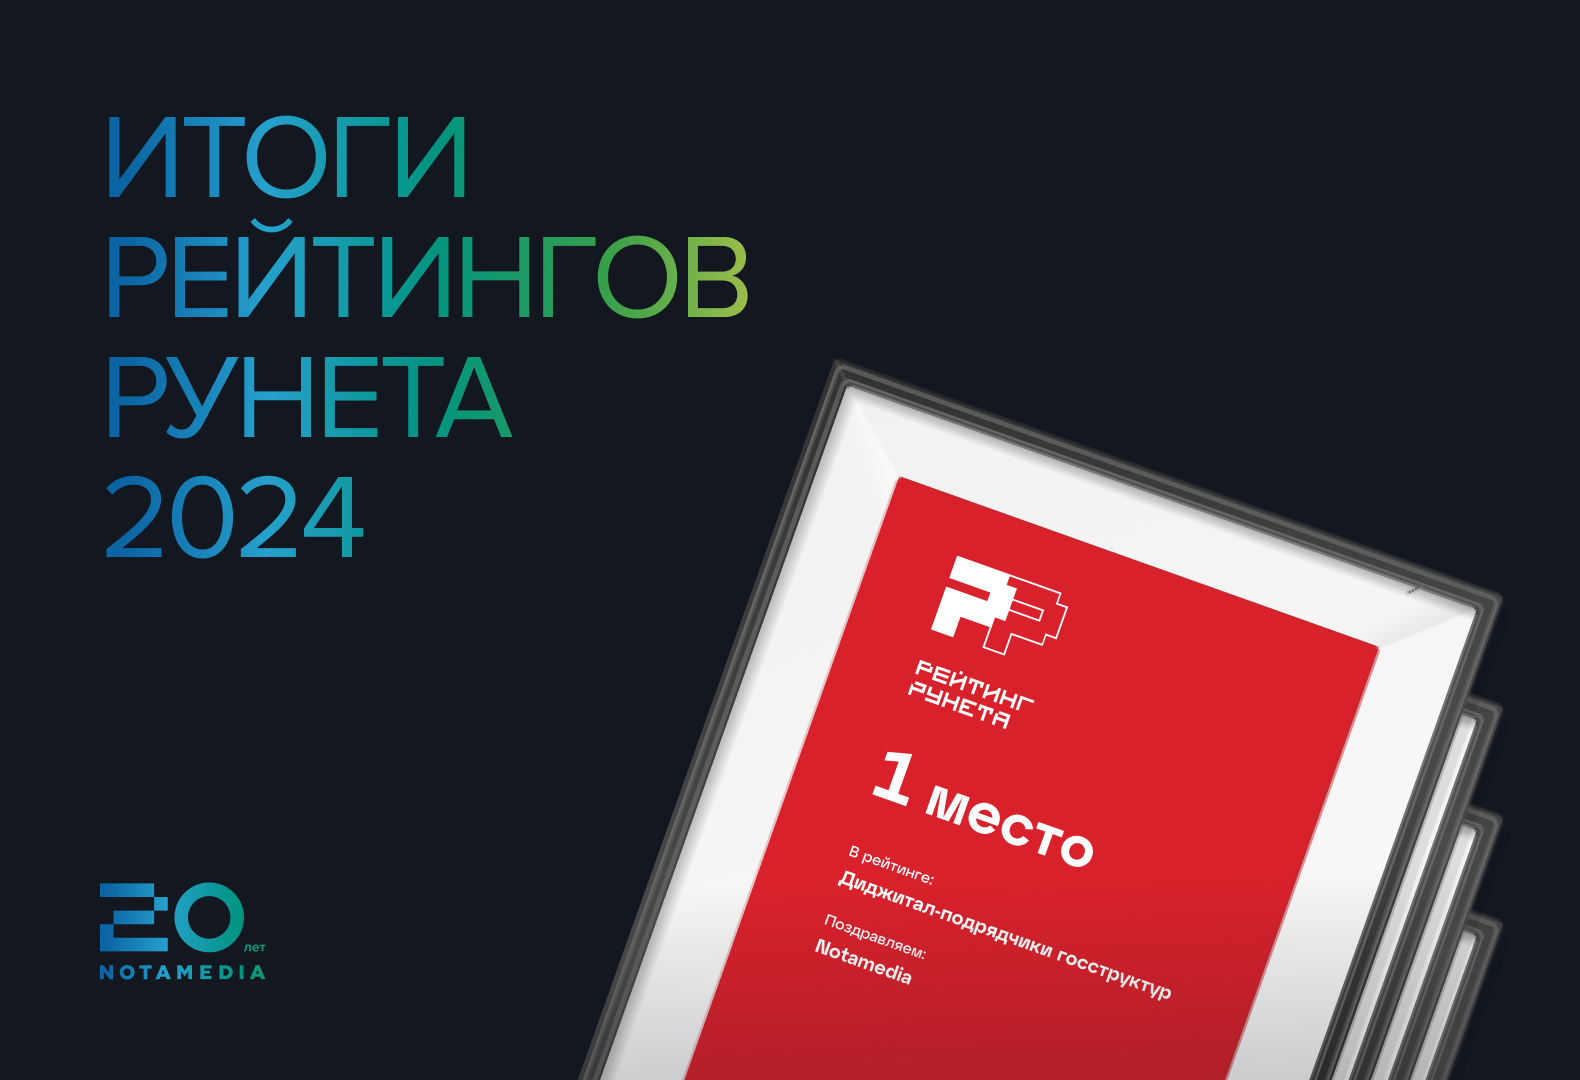 Объявлены долгожданные результаты Рейтинга Рунета 2024